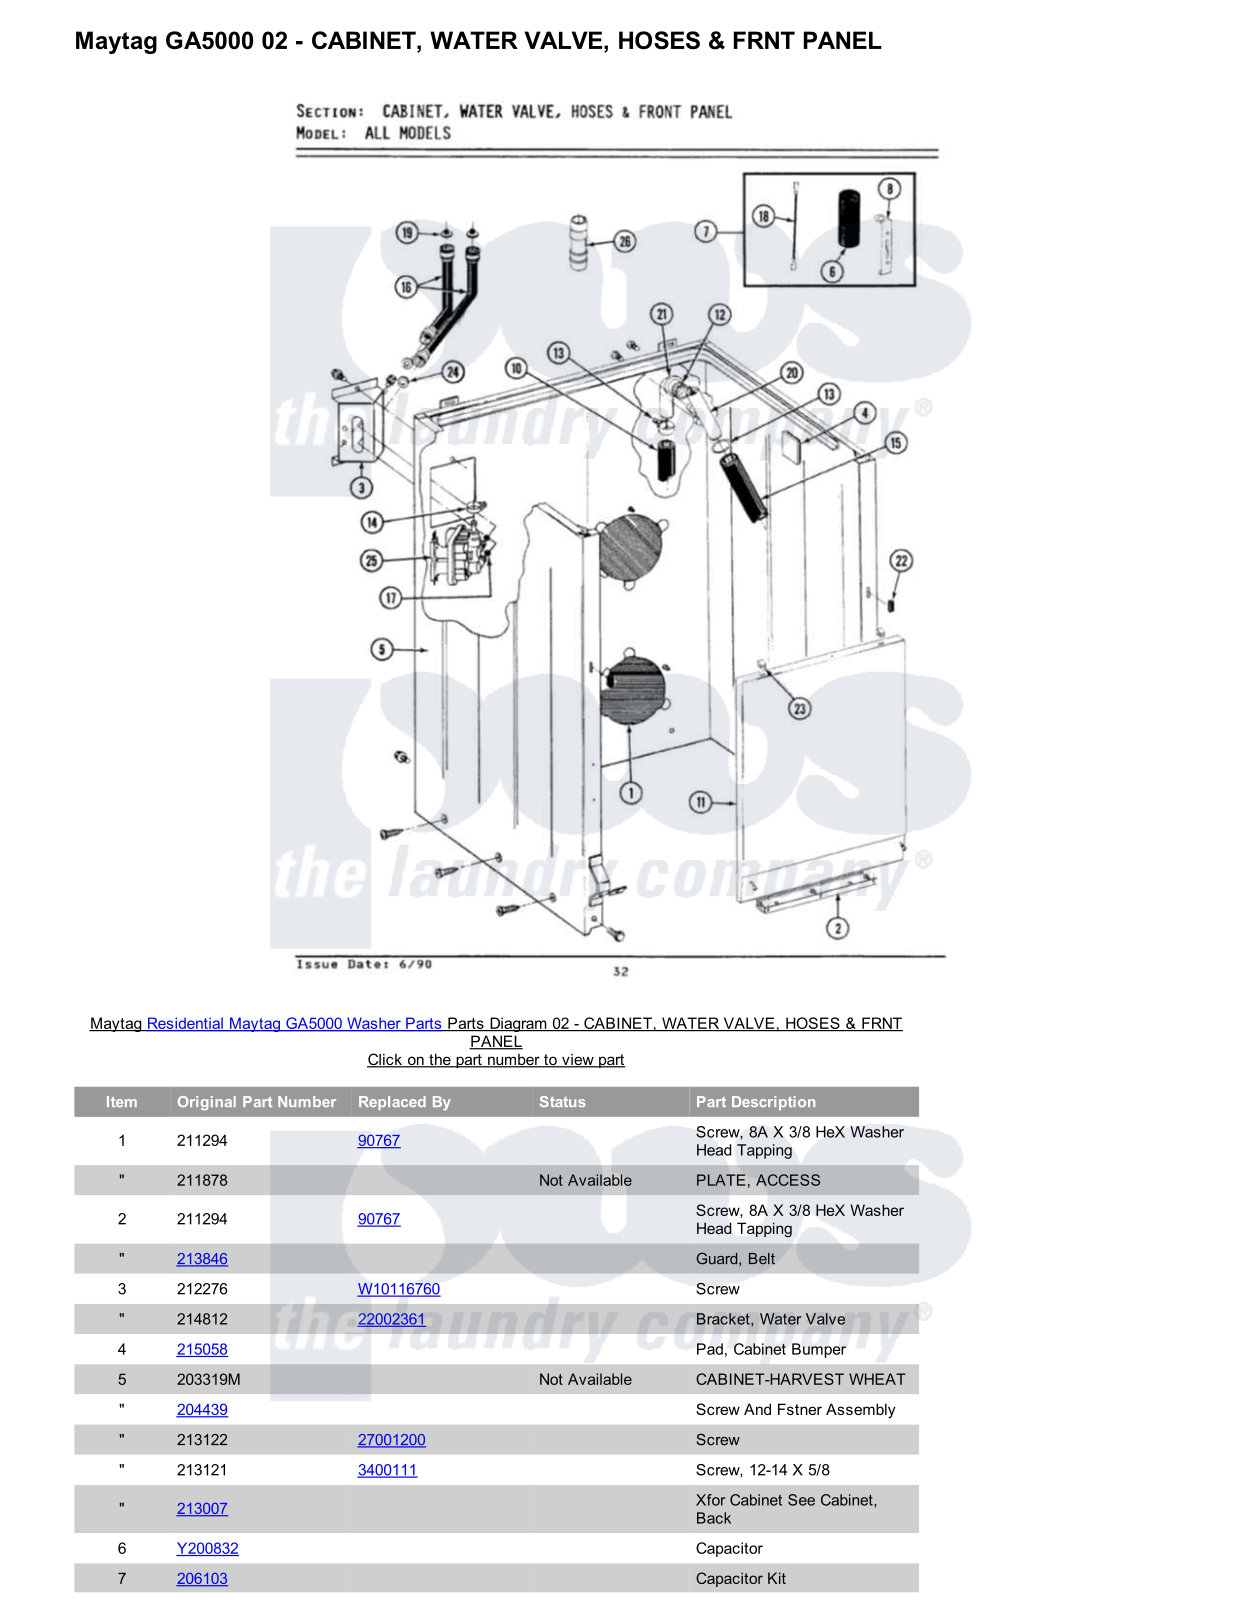 Maytag GA5000 Parts Diagram